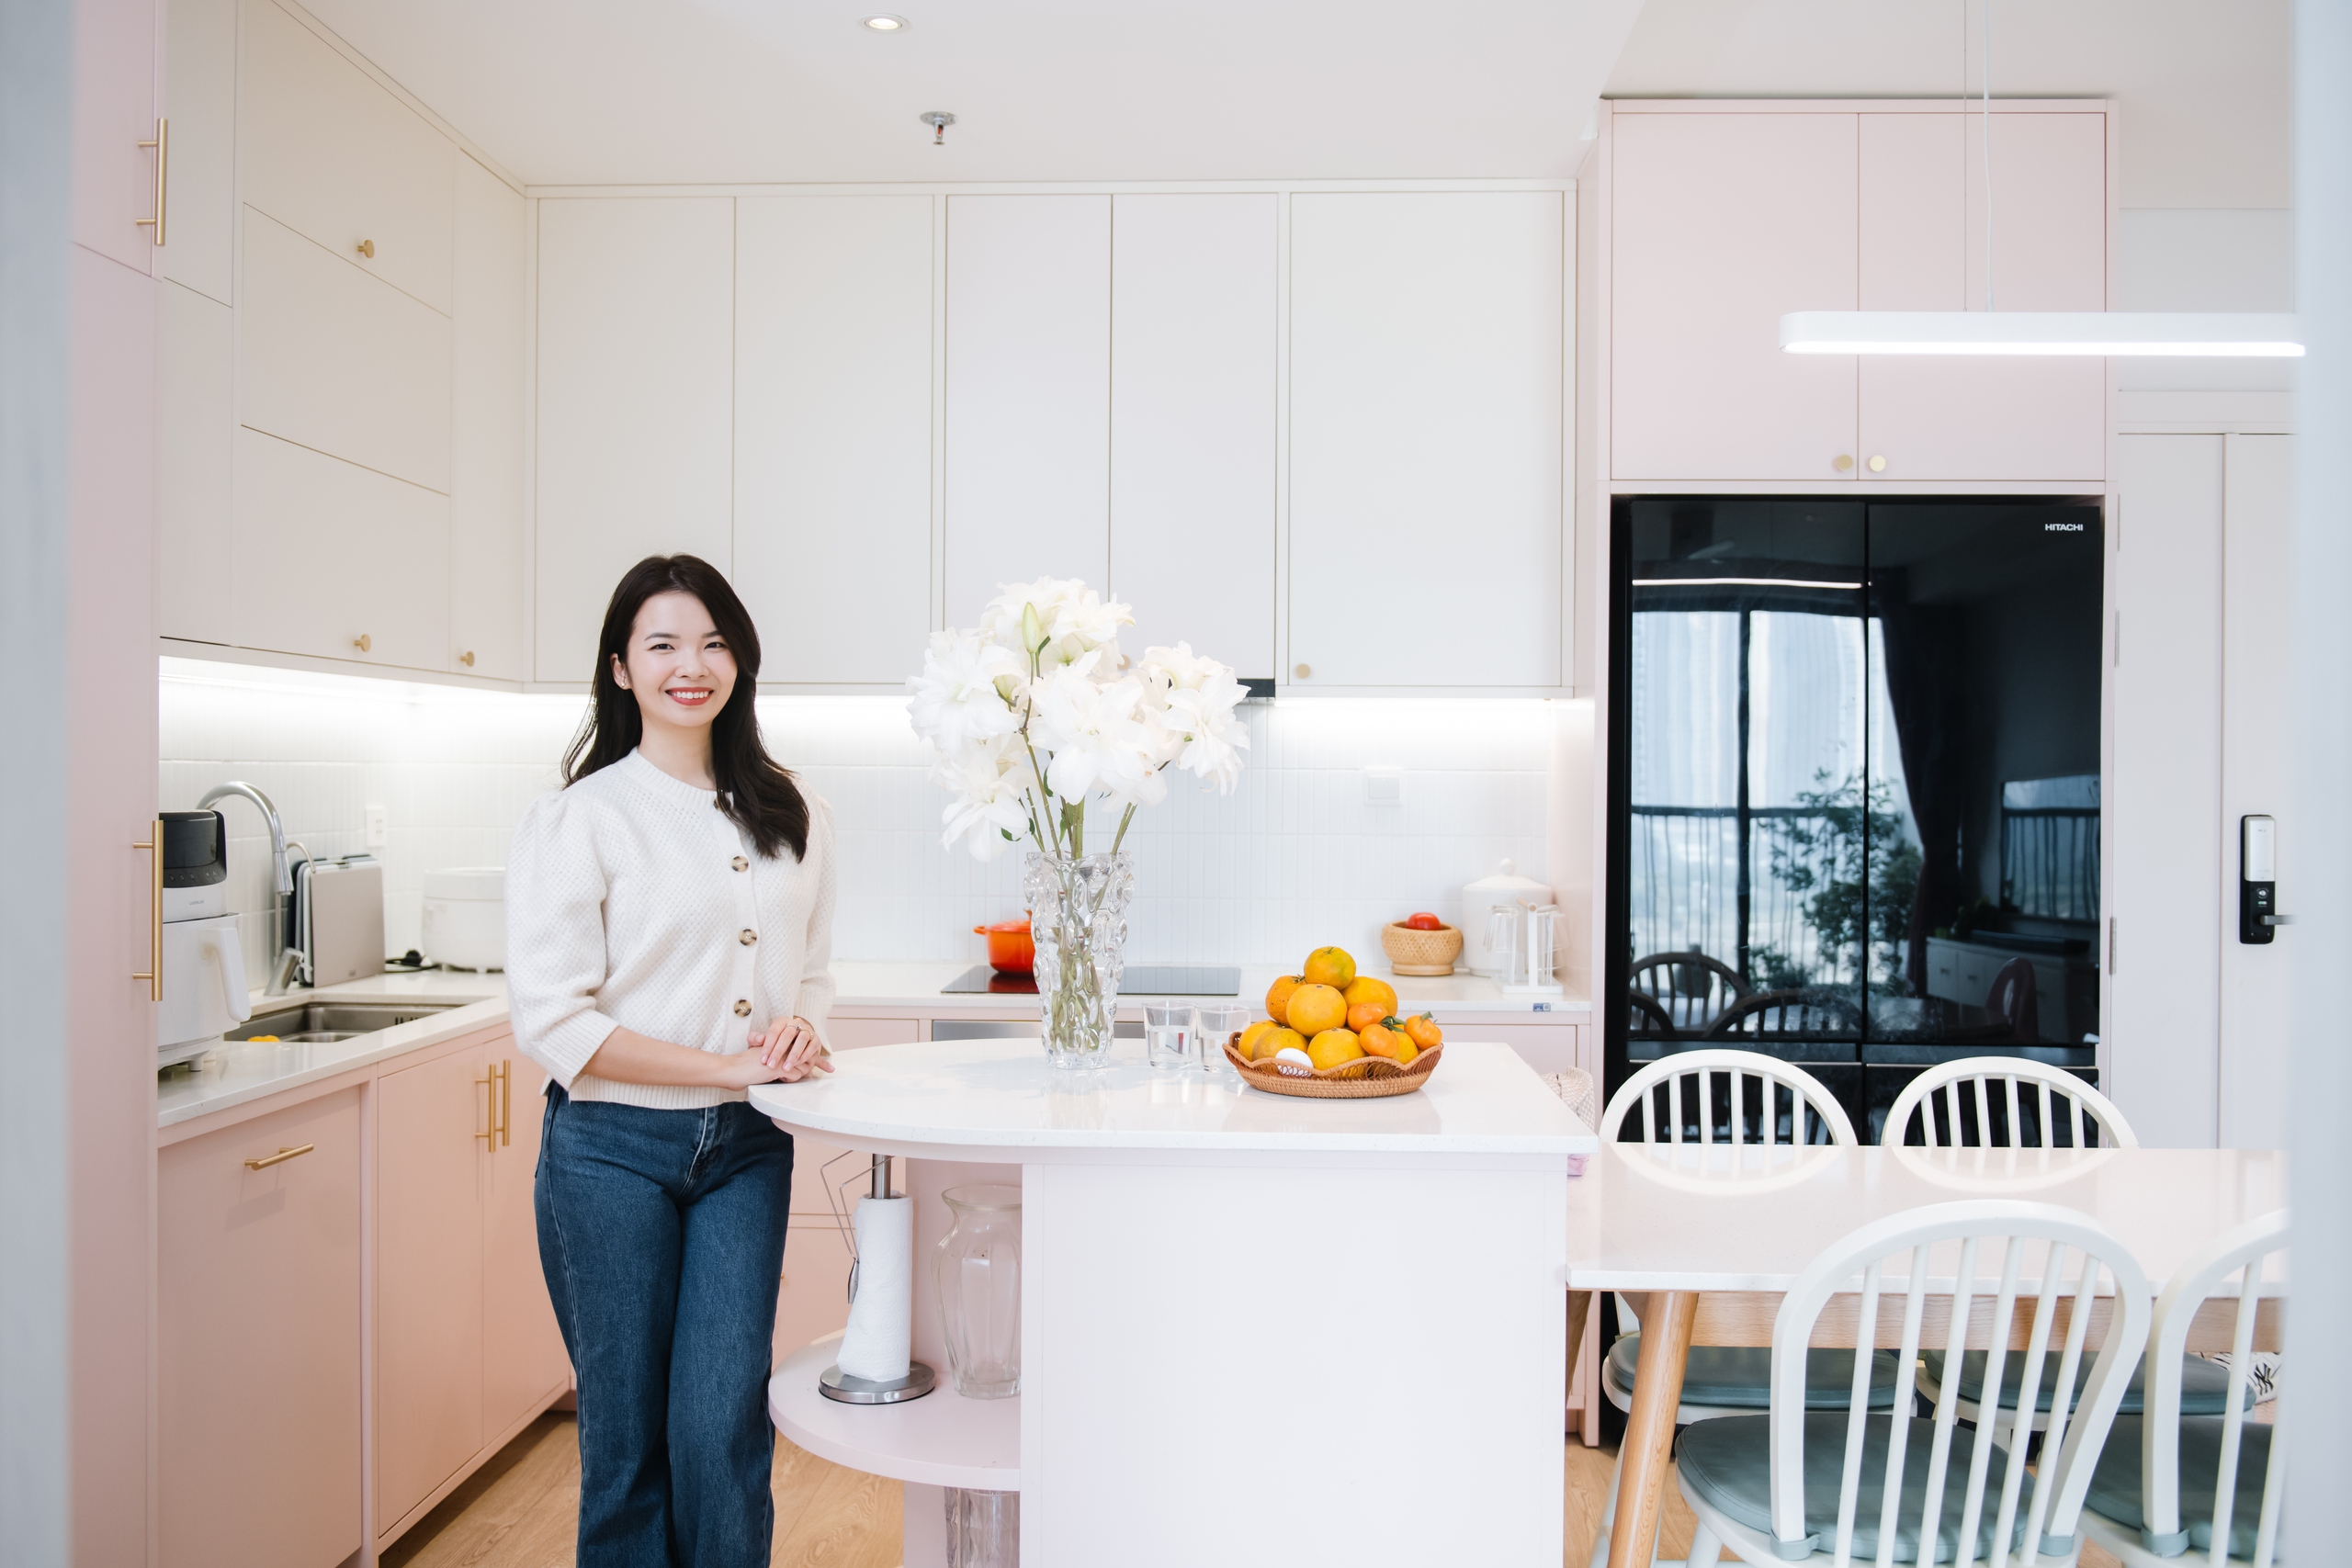 Đến thăm không gian sống của Beauty blogger Hoàng Ngọc Diệp: Chỉ 15 phút đã &quot;chốt&quot; ngay đây là căn nhà trong mơ vì điều này, mê mẩn khu bếp vì có hệ tủ kho chứa cả thế giới - Ảnh 7.